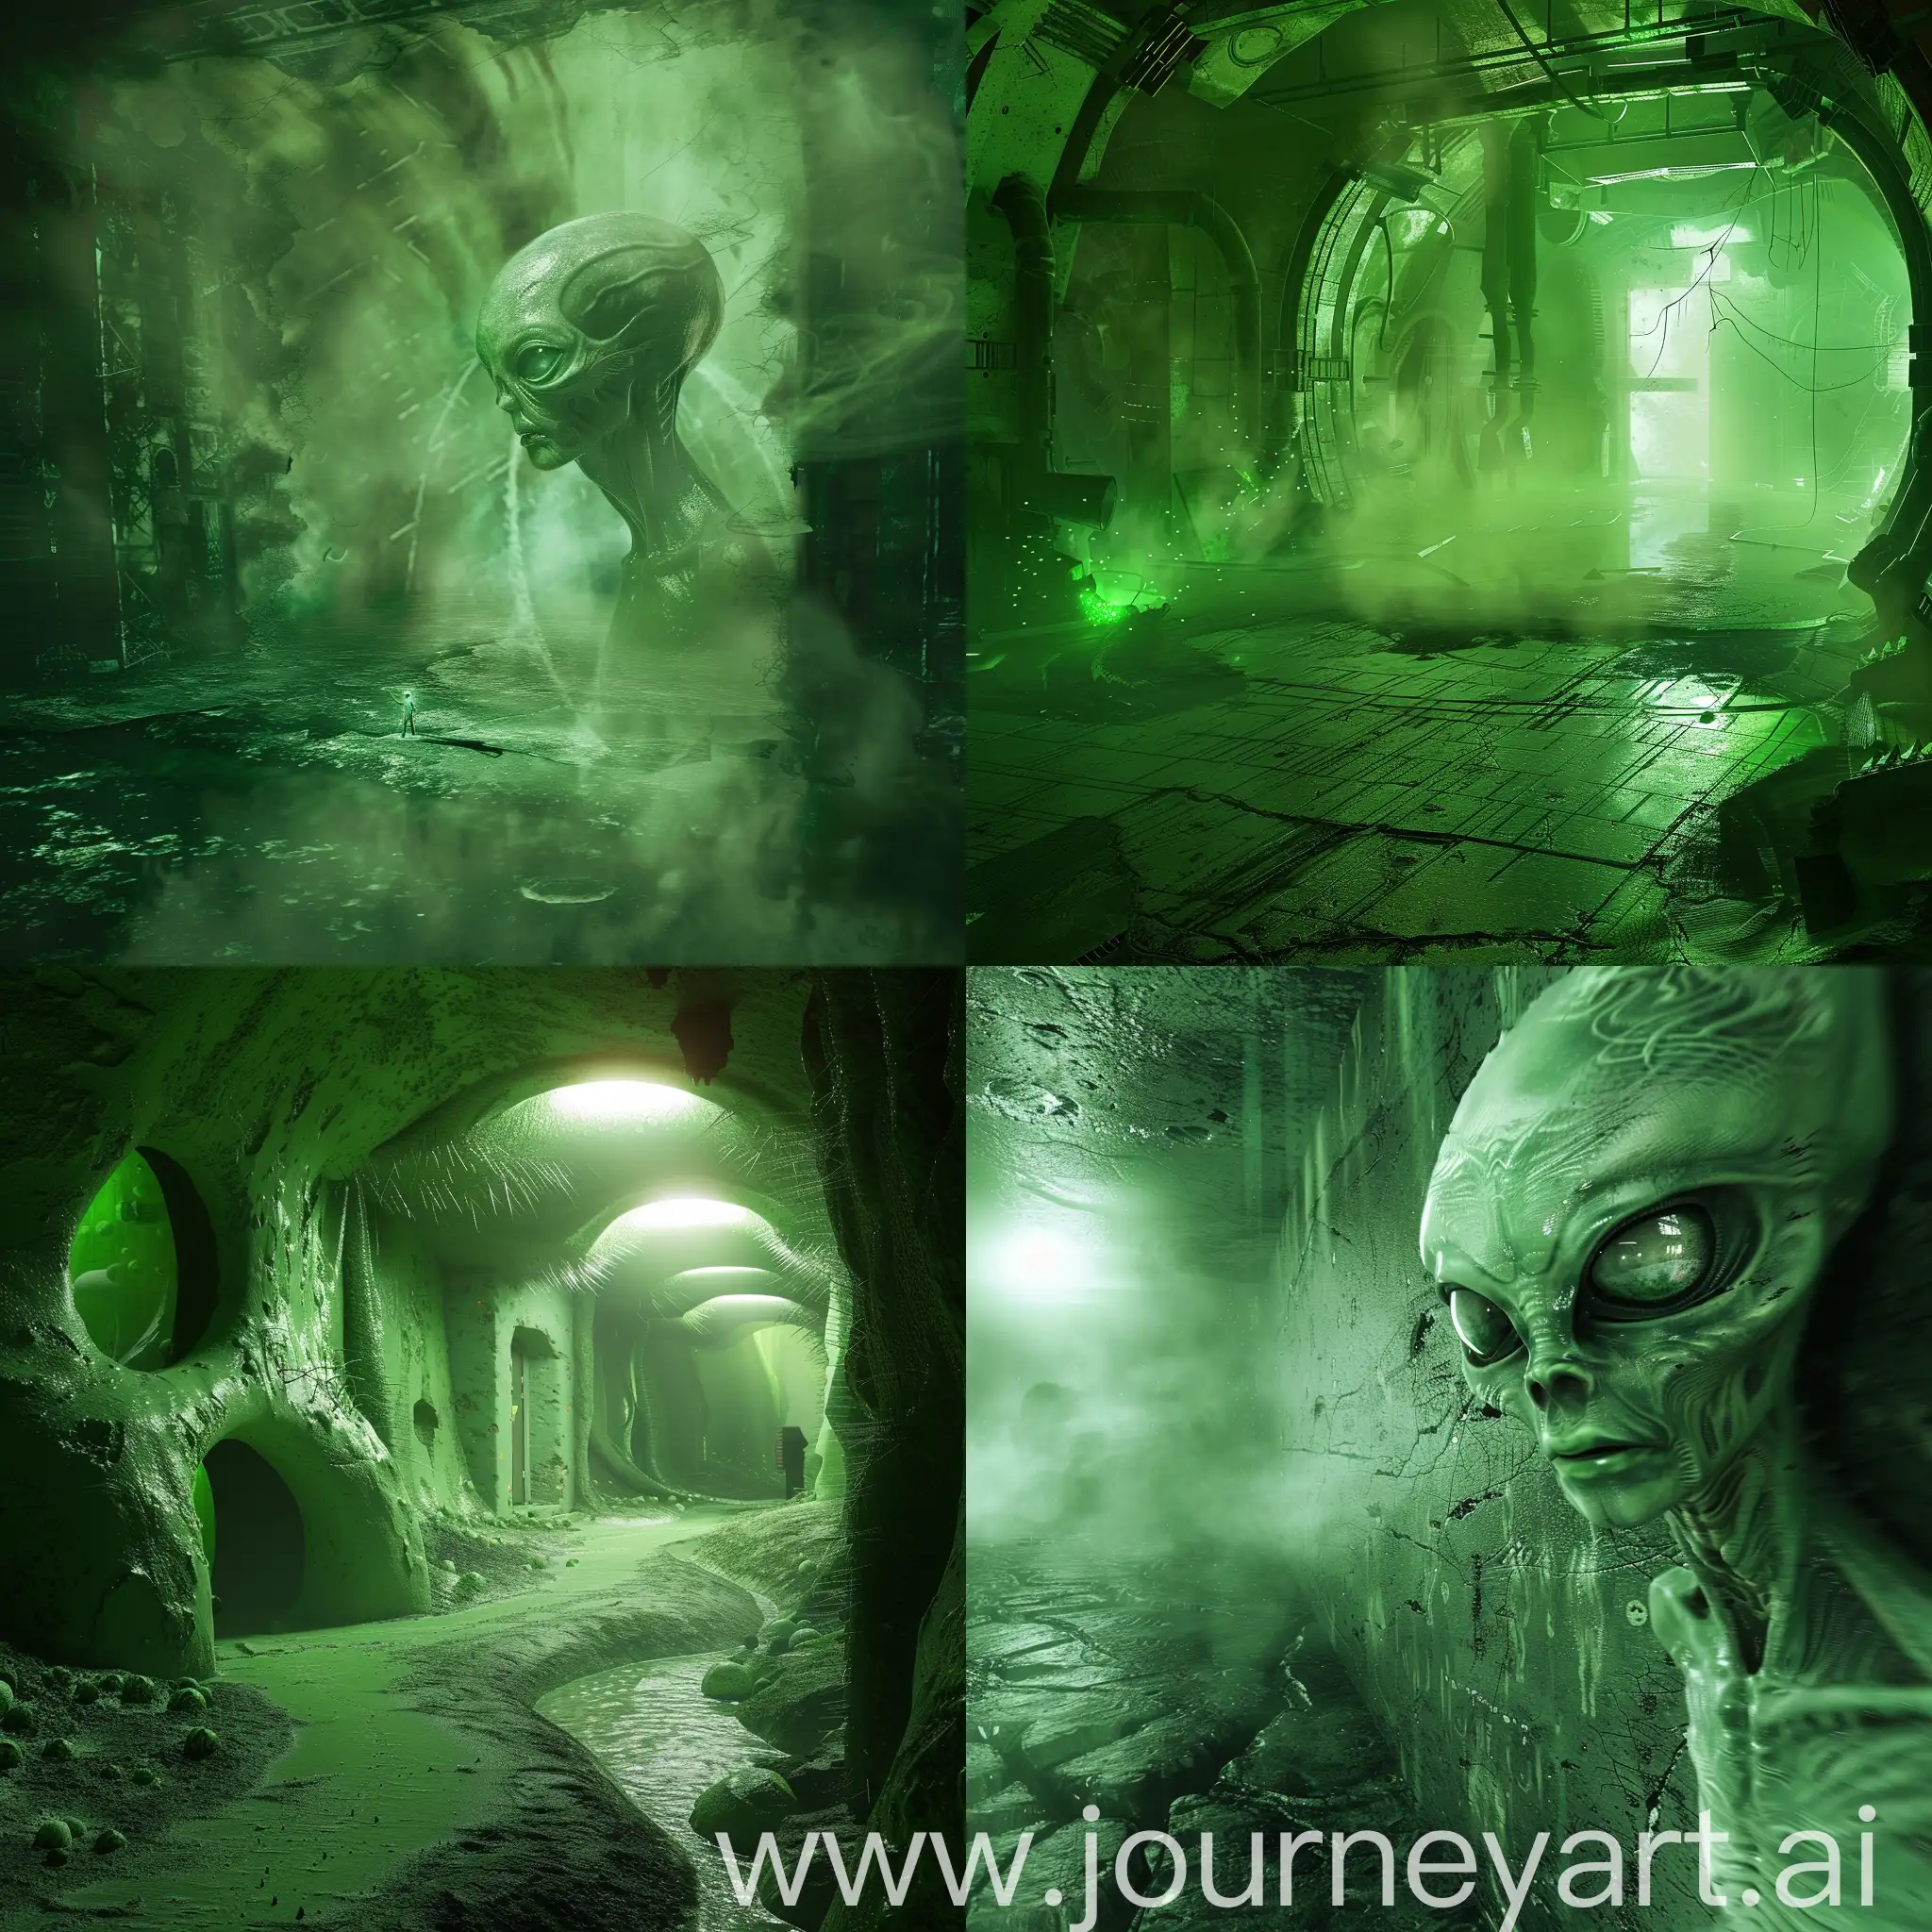 Eerie-Alien-World-Green-Atmosphere-in-Serene-Space